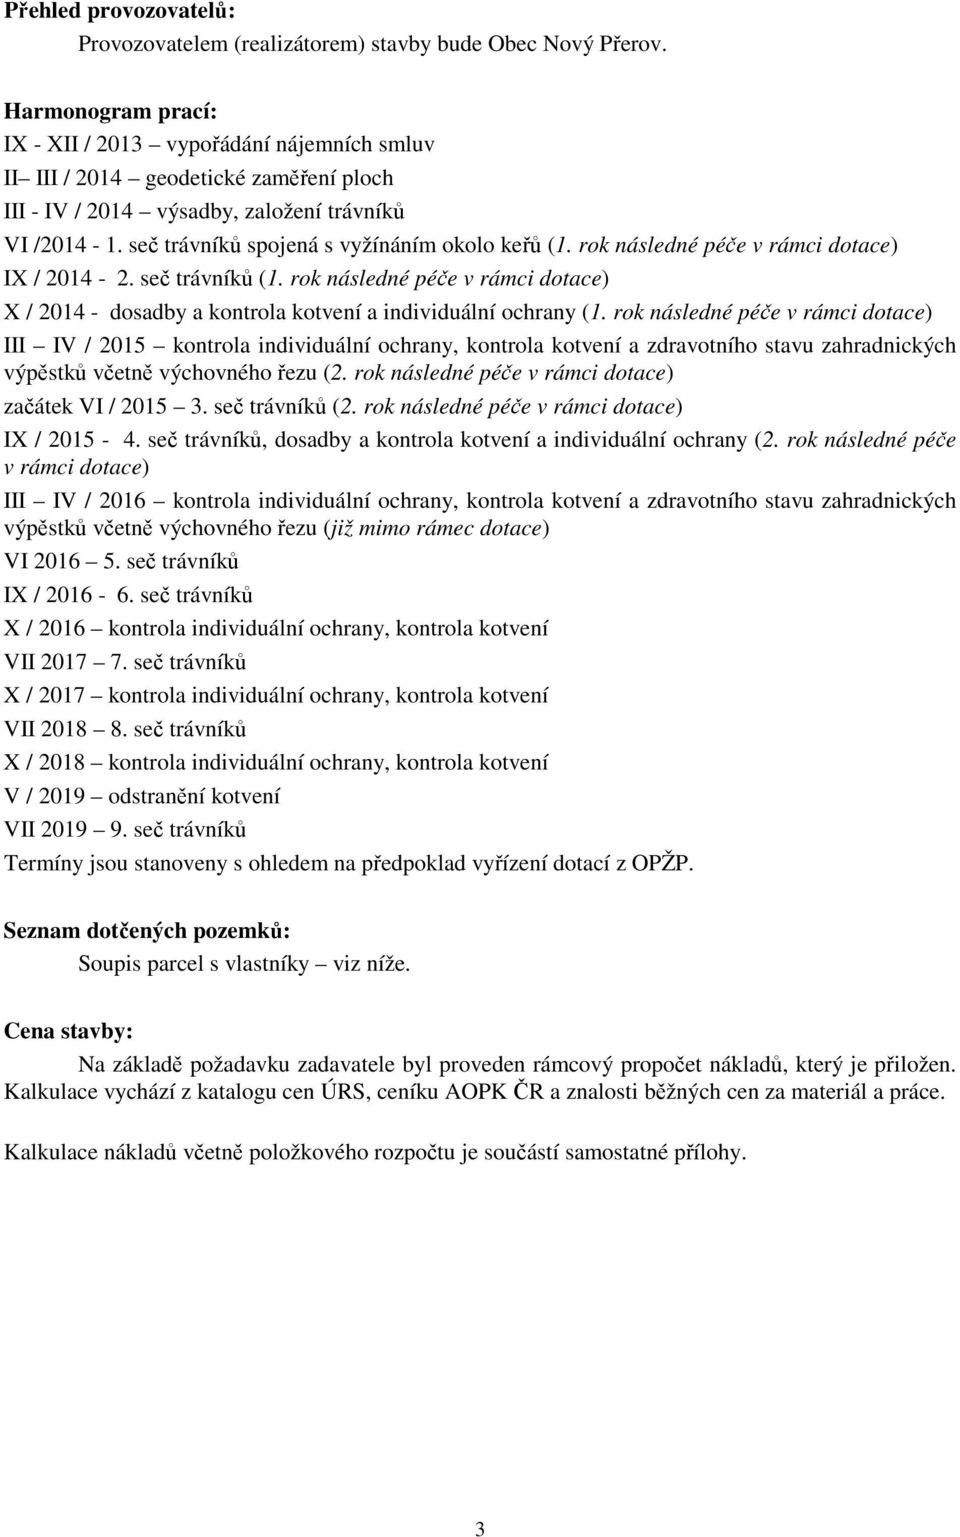 seč trávníků spojená s vyžínáním okolo keřů (1. rok následné péče v rámci dotace) IX / 2014-2. seč trávníků (1.